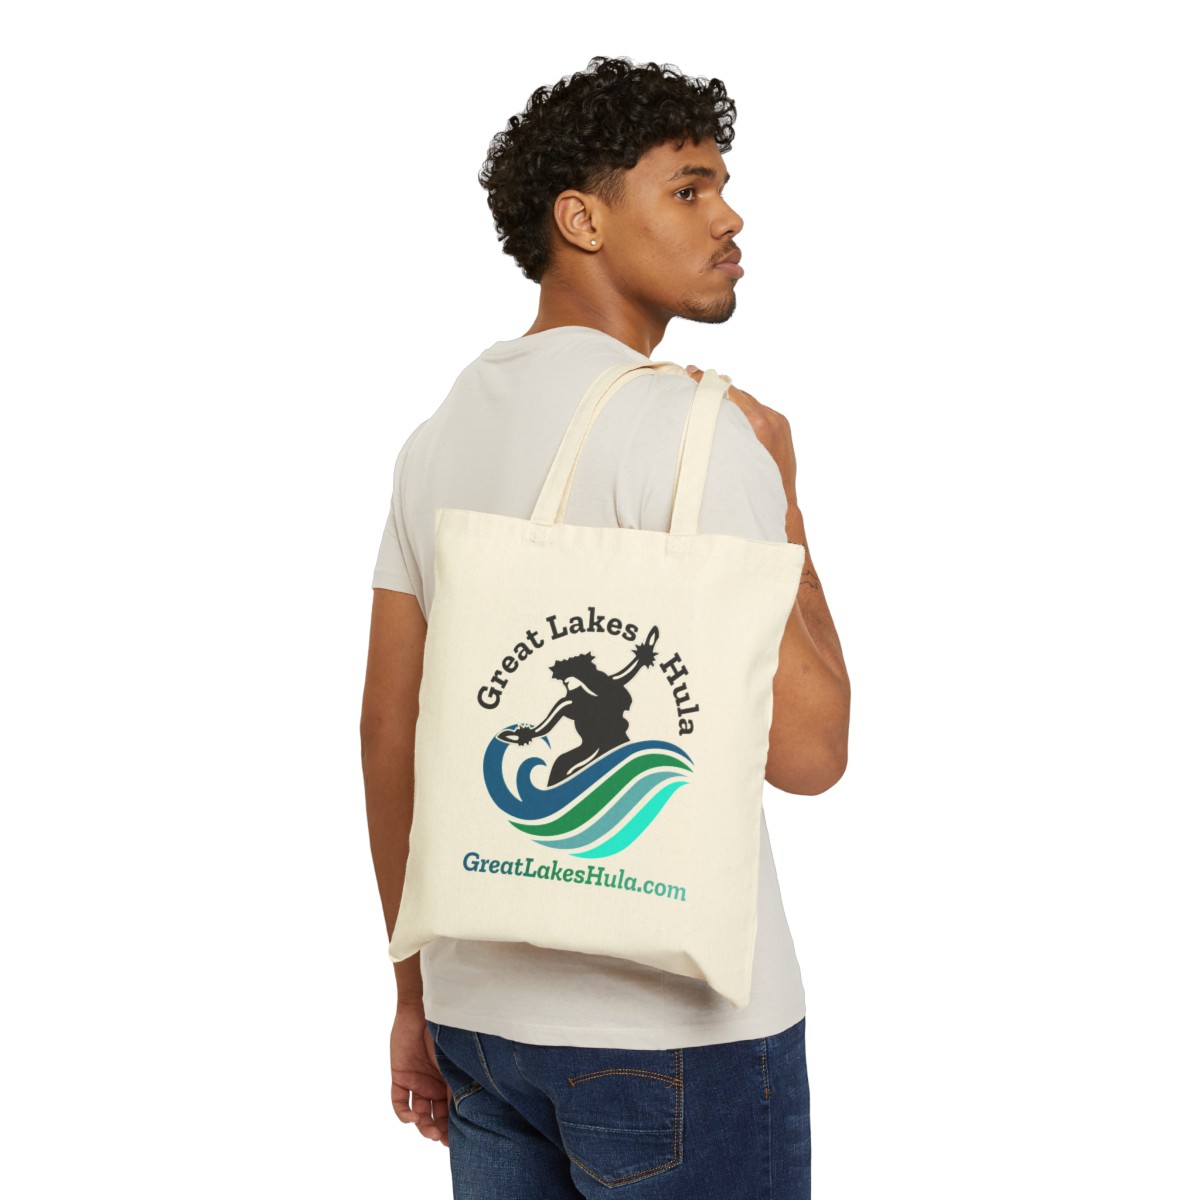 Great Lakes Hula Cotton Canvas Tote Bag product thumbnail image